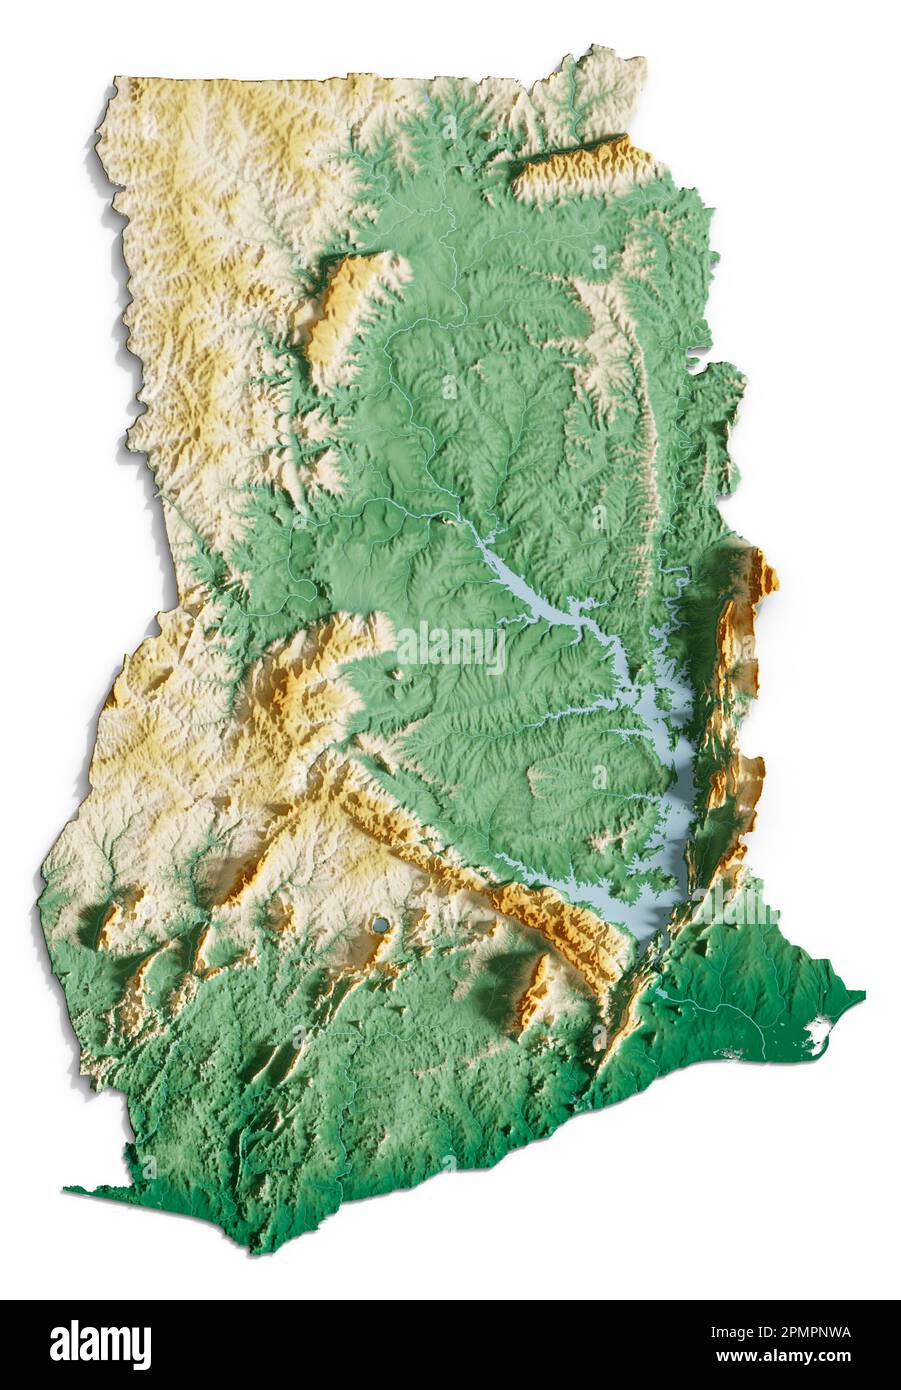 Ghana. Rendu détaillé en 3D d'une carte de relief ombrée avec des rivières et des lacs. Coloré par élévation. Arrière-plan blanc. Créé avec des données satellite. Banque D'Images